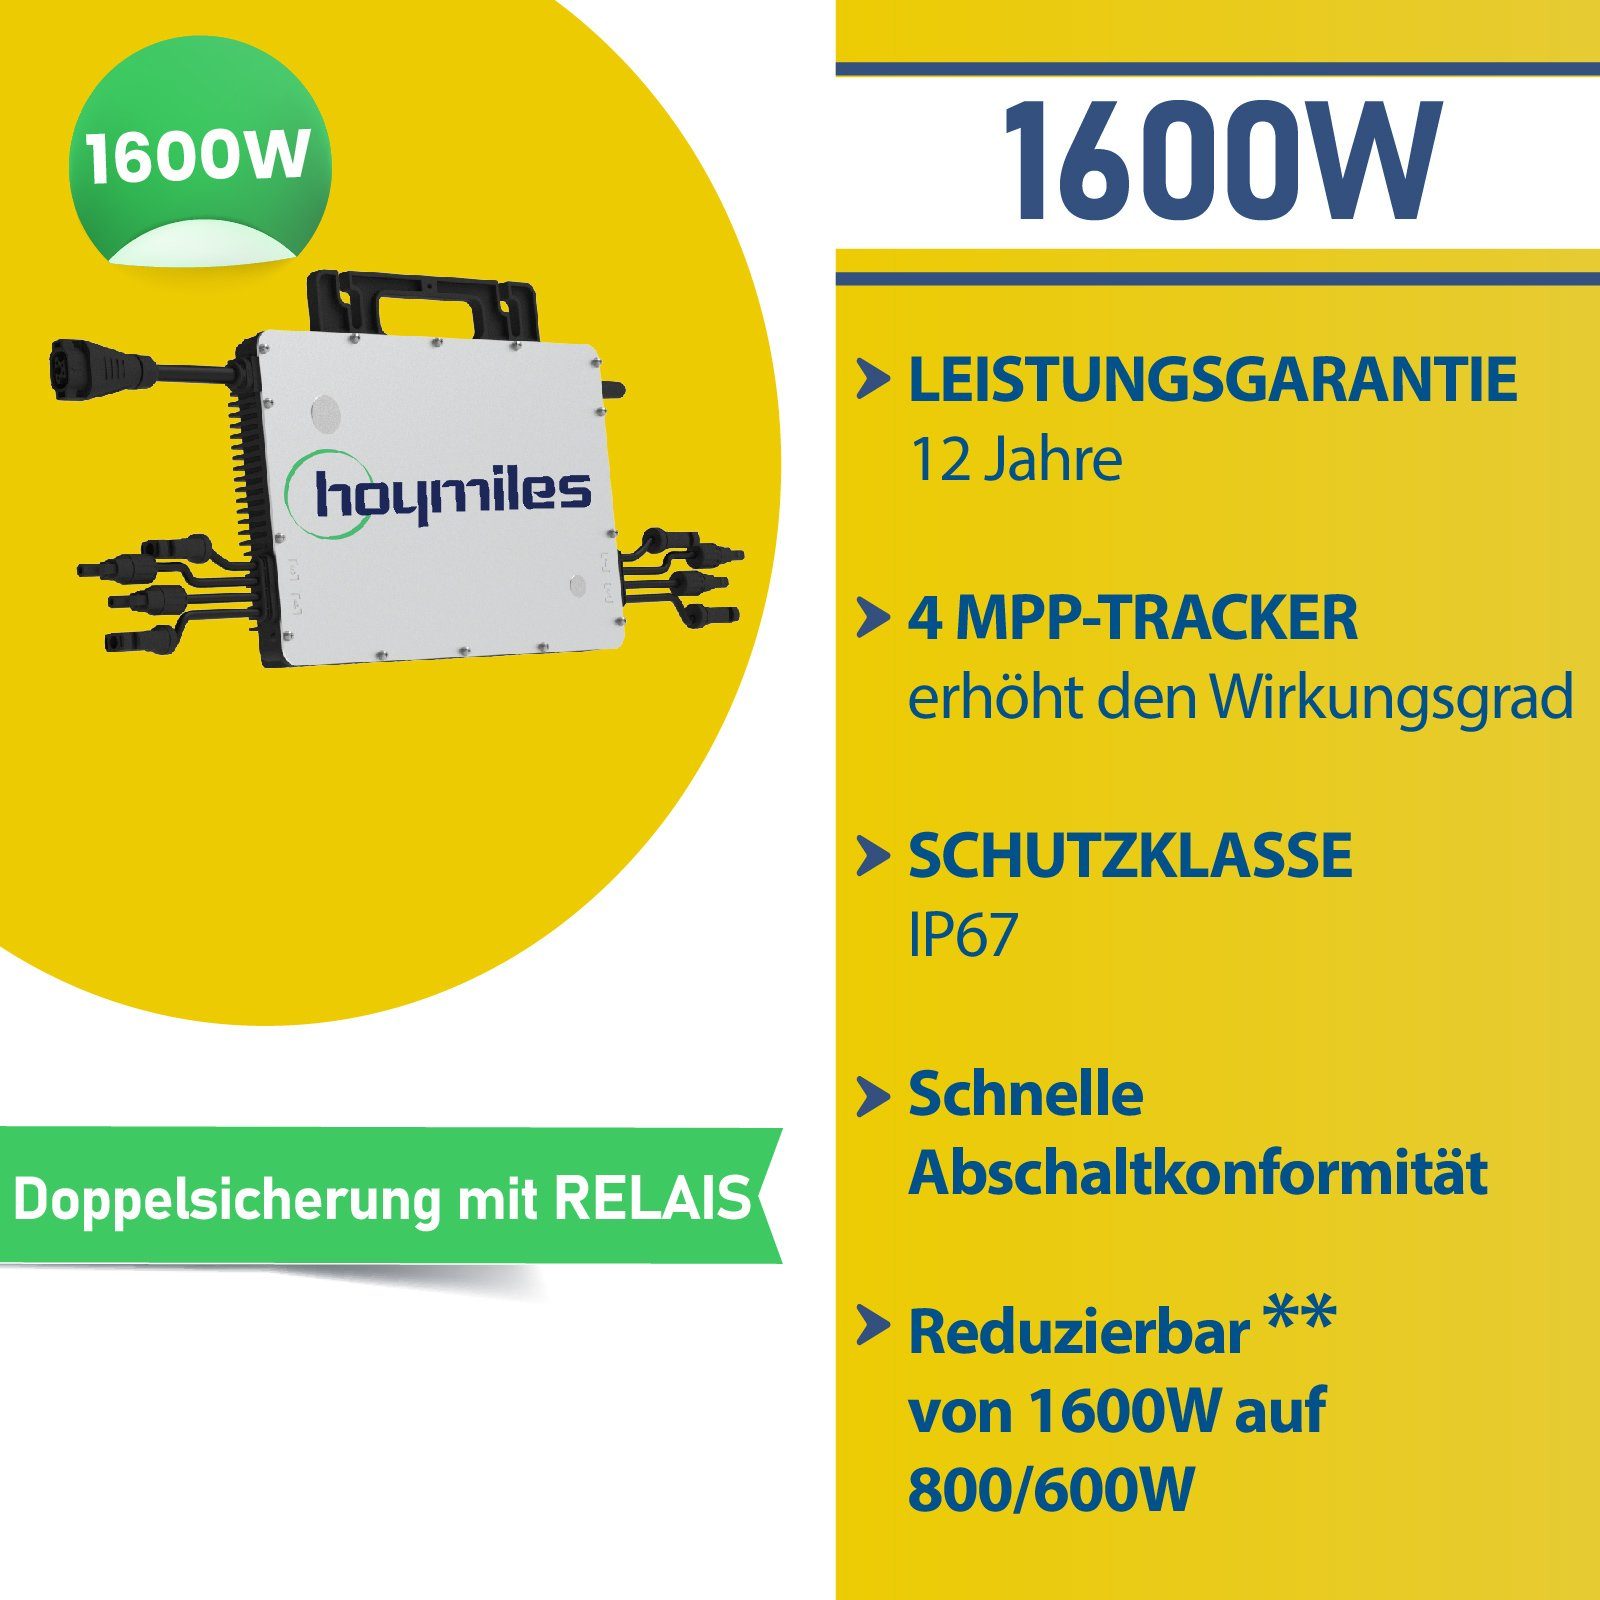 1660W Wechselrichter, PV-Montage Hoymiles HMS-1600-4T Balkonkraftwerk, Stegpearl Rund, Solaranlage Balkongeländer DTU-WLite-S Photovoltaik